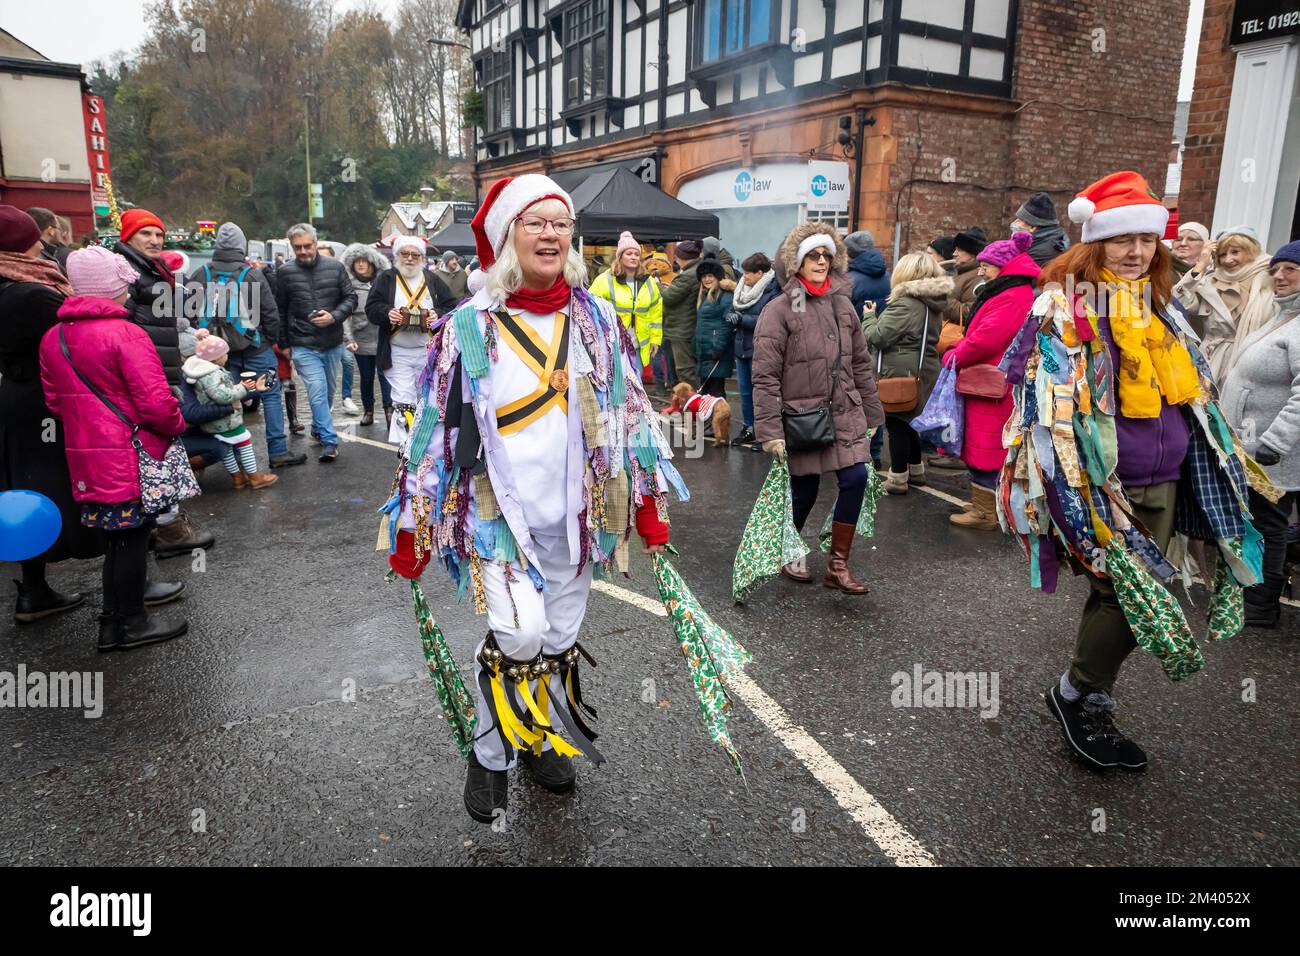 Des danseuses Morris se produisent dans la rue pendant le Grand Parade au Lymm Dickensian Christmas Festival Banque D'Images